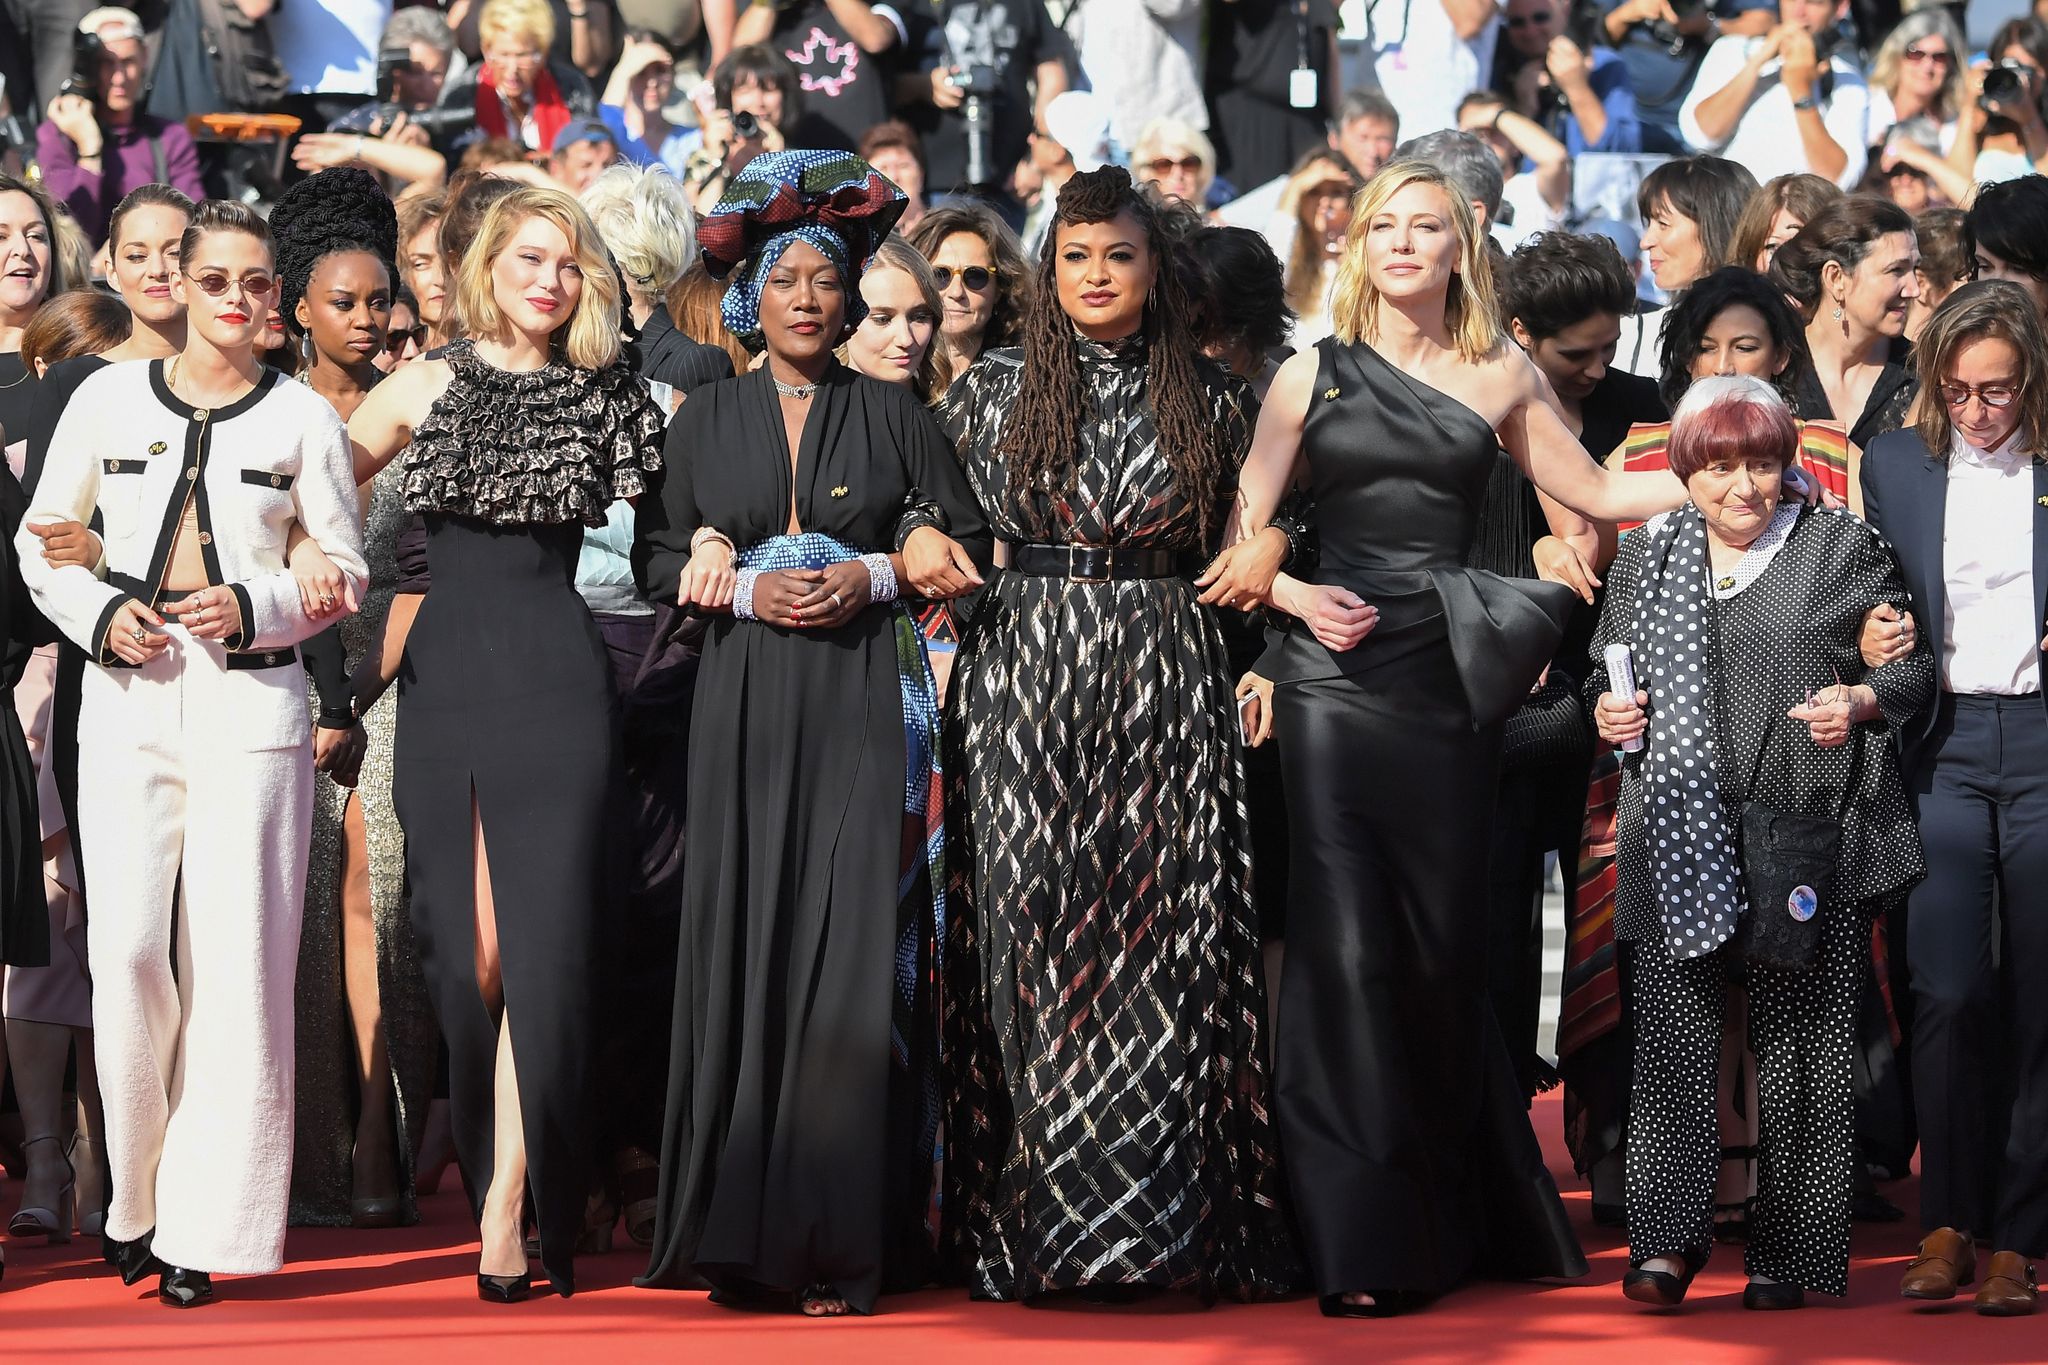 Le donne registe e attrici sfilano a Cannes 2018 